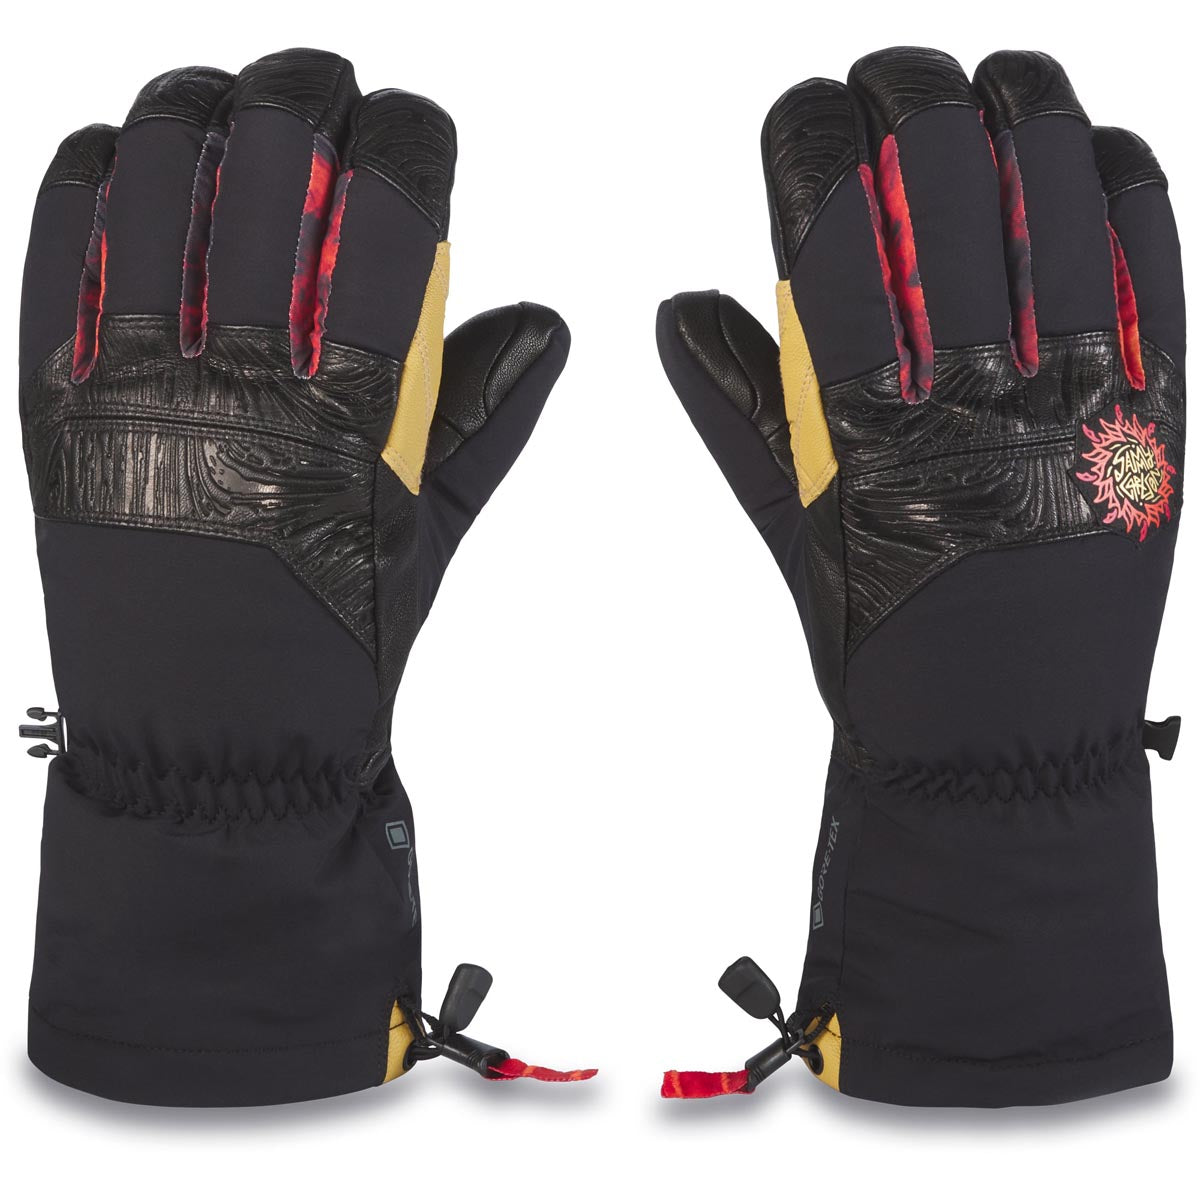 Dakine Team Excursion Gore-tex Glove Sammy Carlson Snowboard Gloves - Black image 1